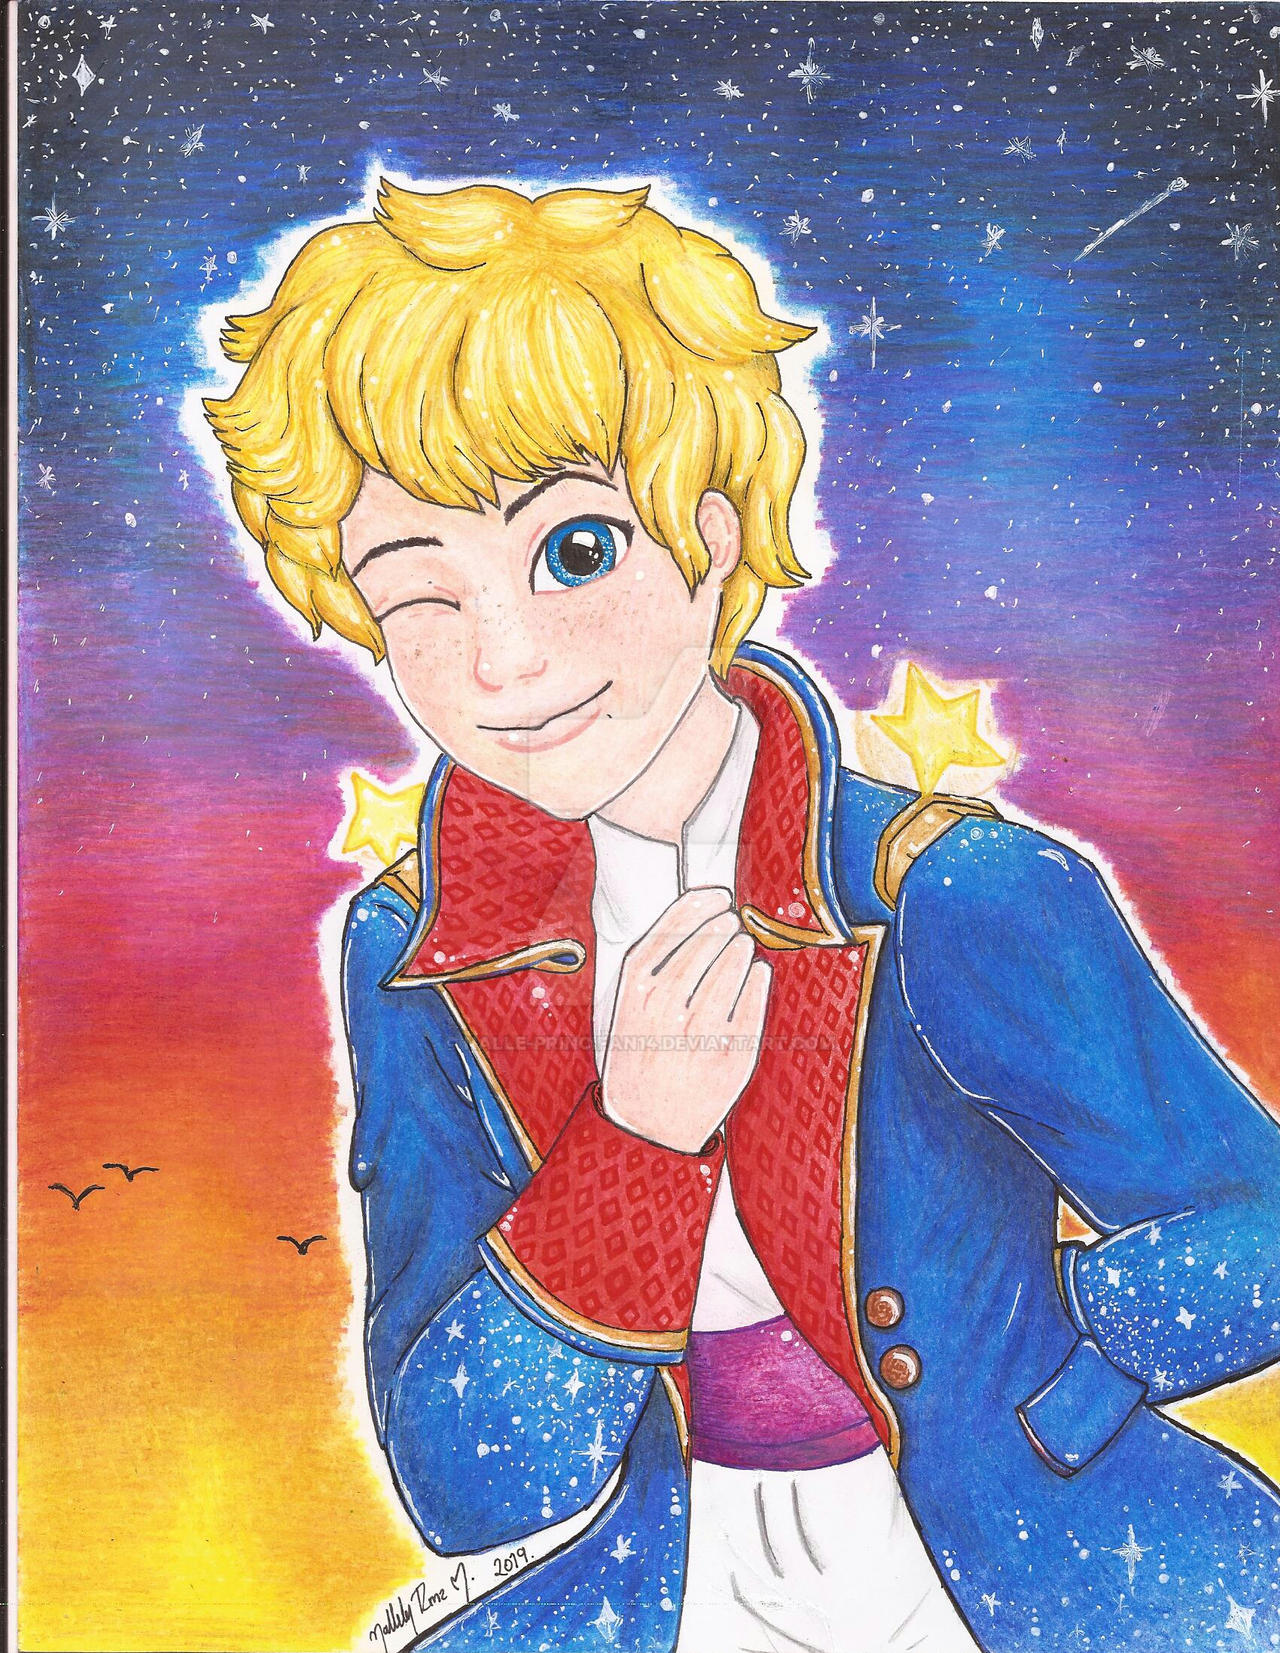 El principito [The Little Prince]